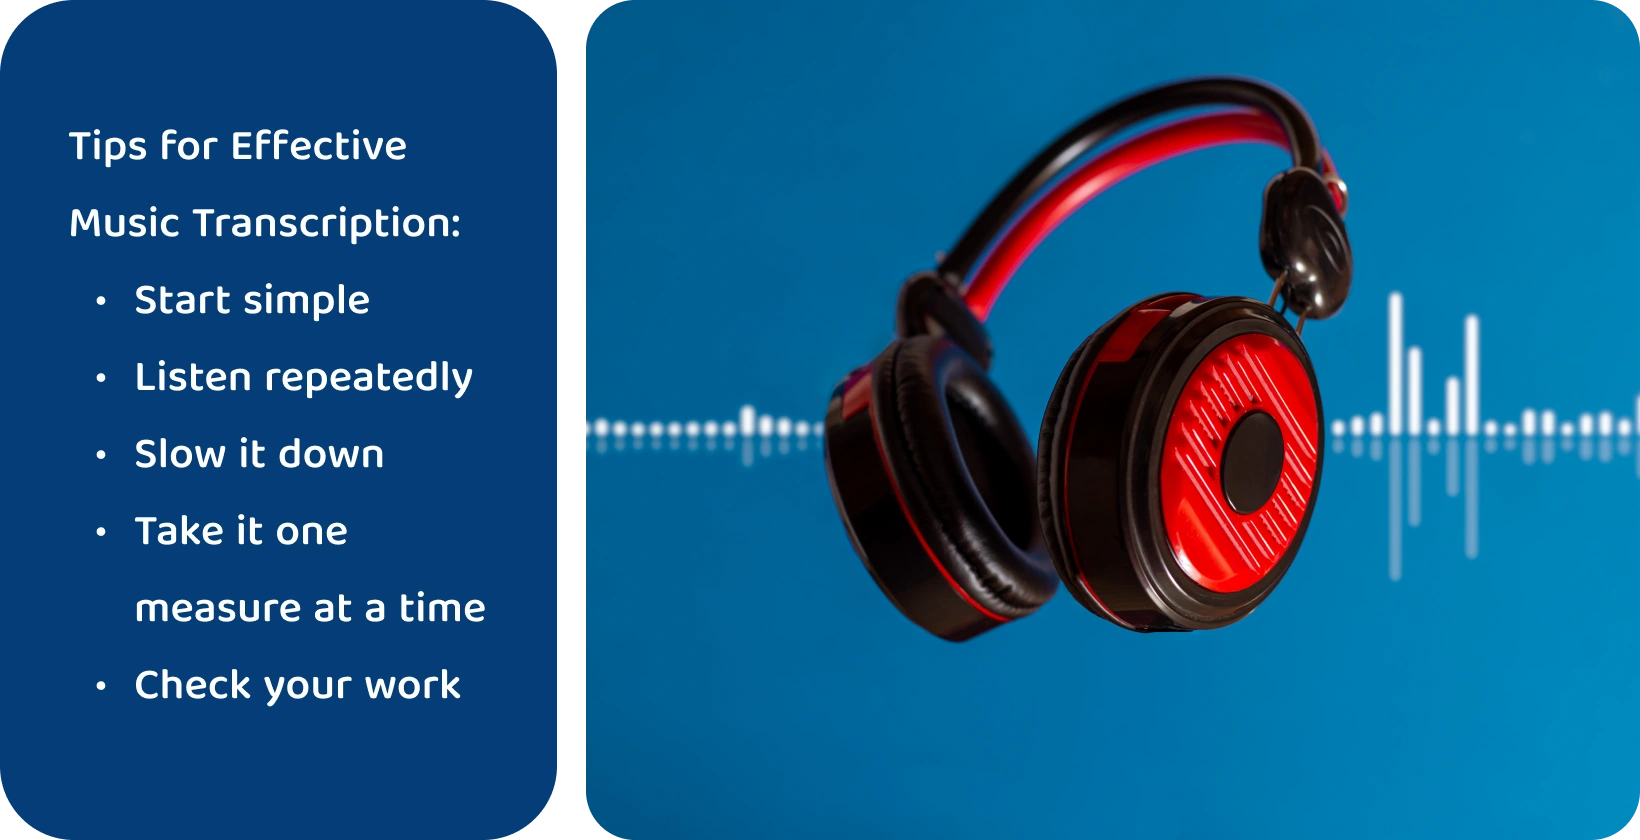 以波形为背景的耳机，代表通过集中和重复聆听来增强音乐转录的工具。